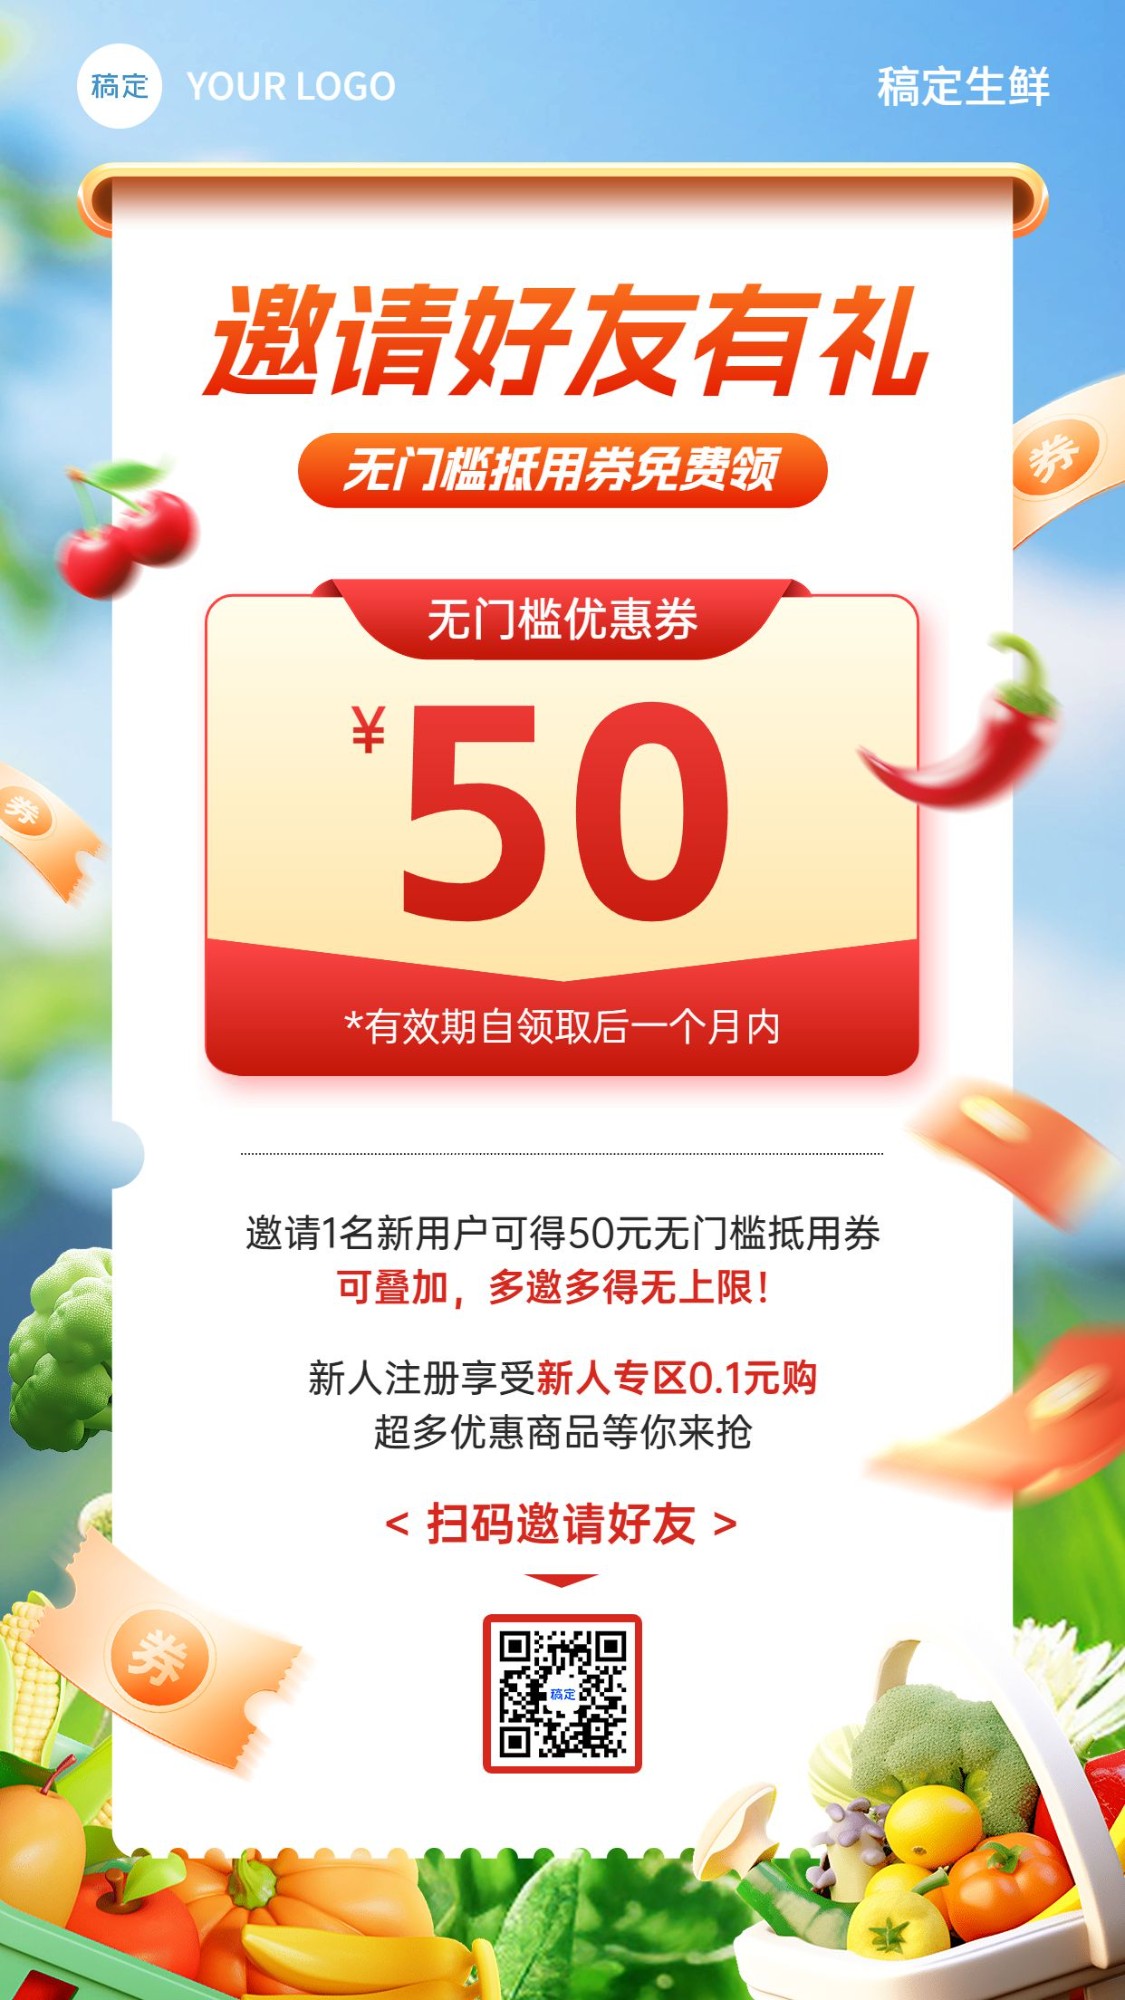 食品生鲜邀请好友活动宣传3D实景手机海报预览效果